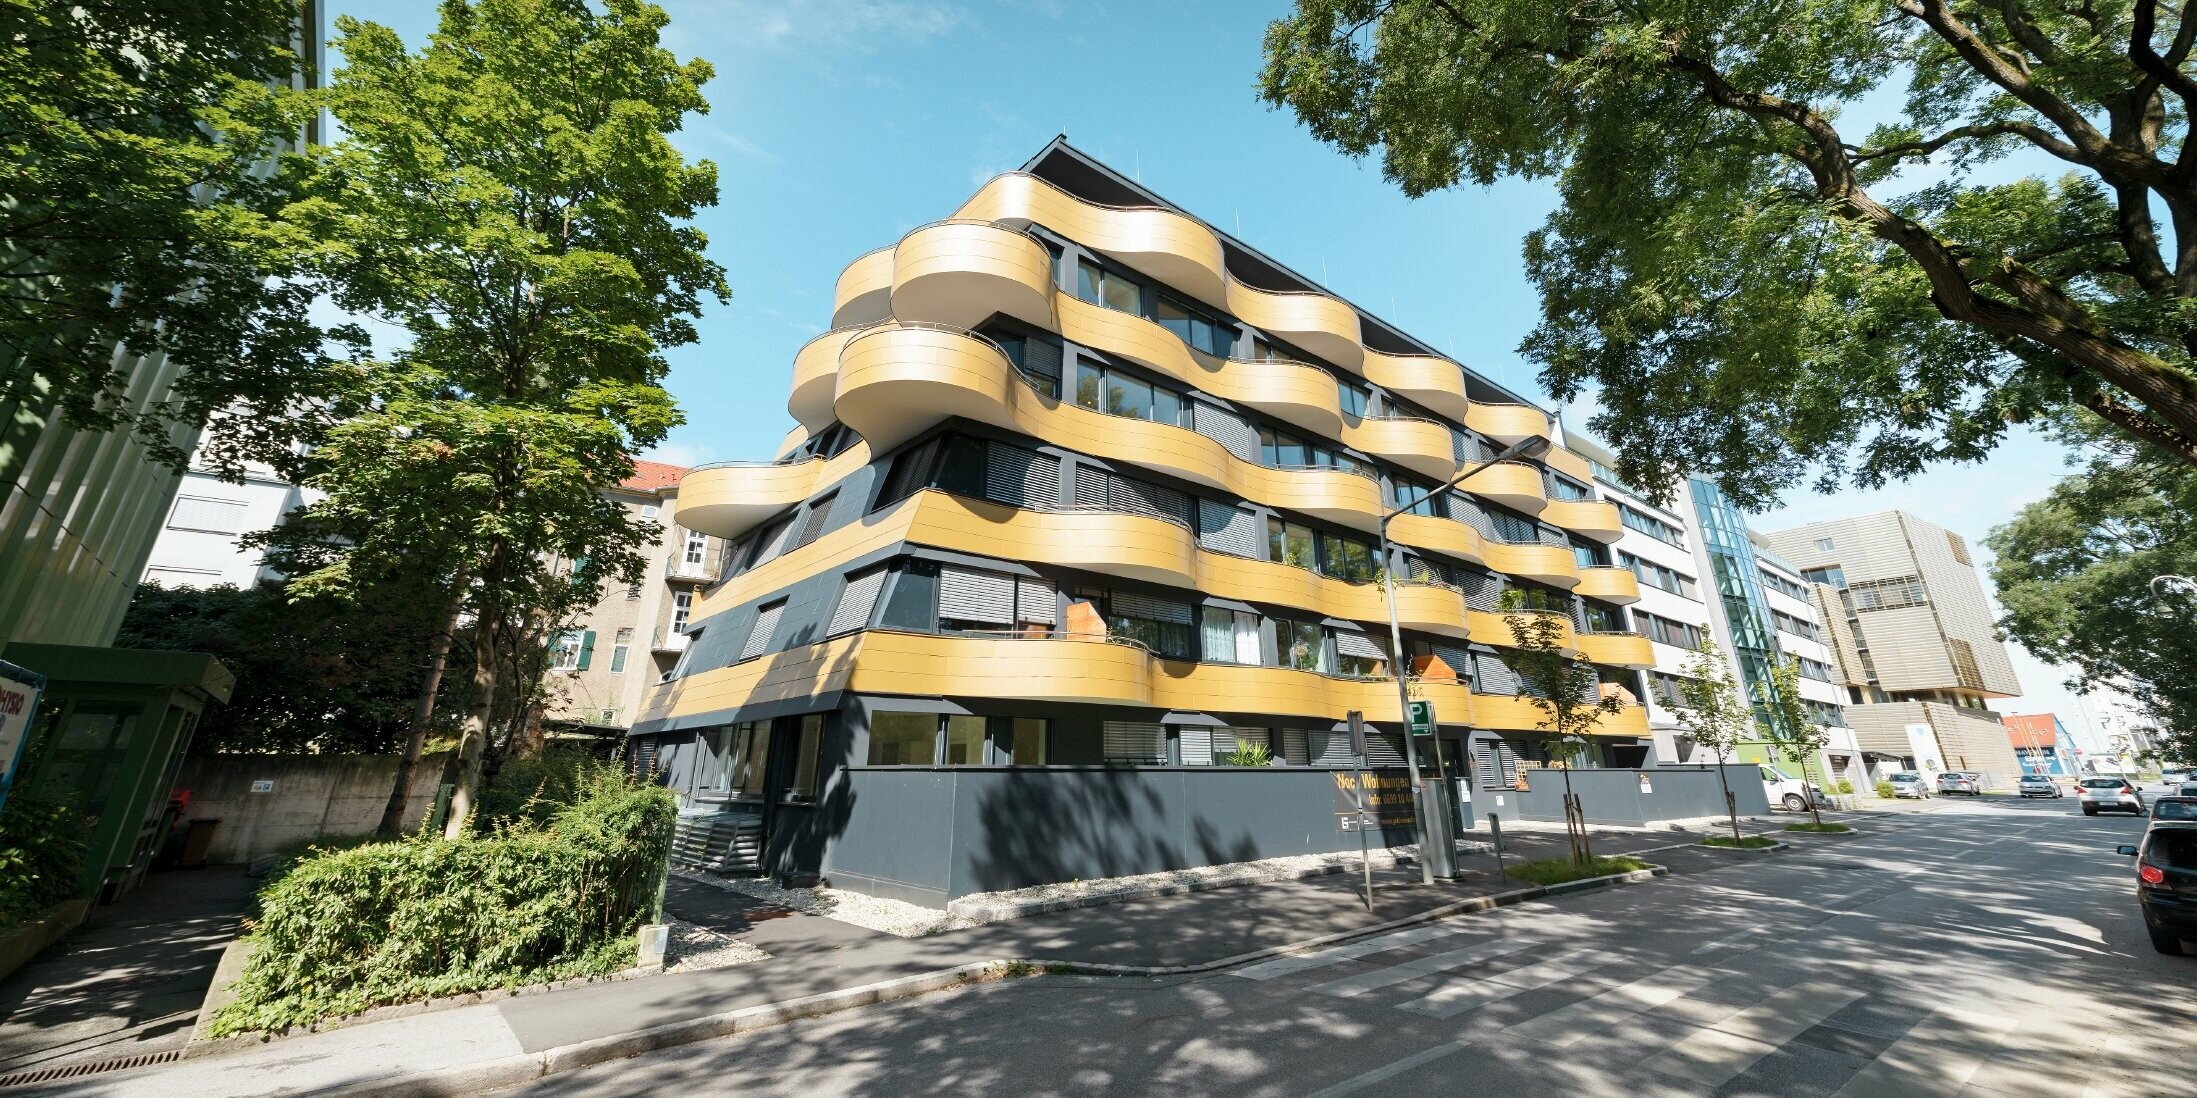 Stanovanjski kompleks »Goldene Welle« v Gradcu v Avstriji, z aluminijastimi kompozitnimi ploščami v zlati barvi, balkoni pa so zaobljeni v obliki valov 